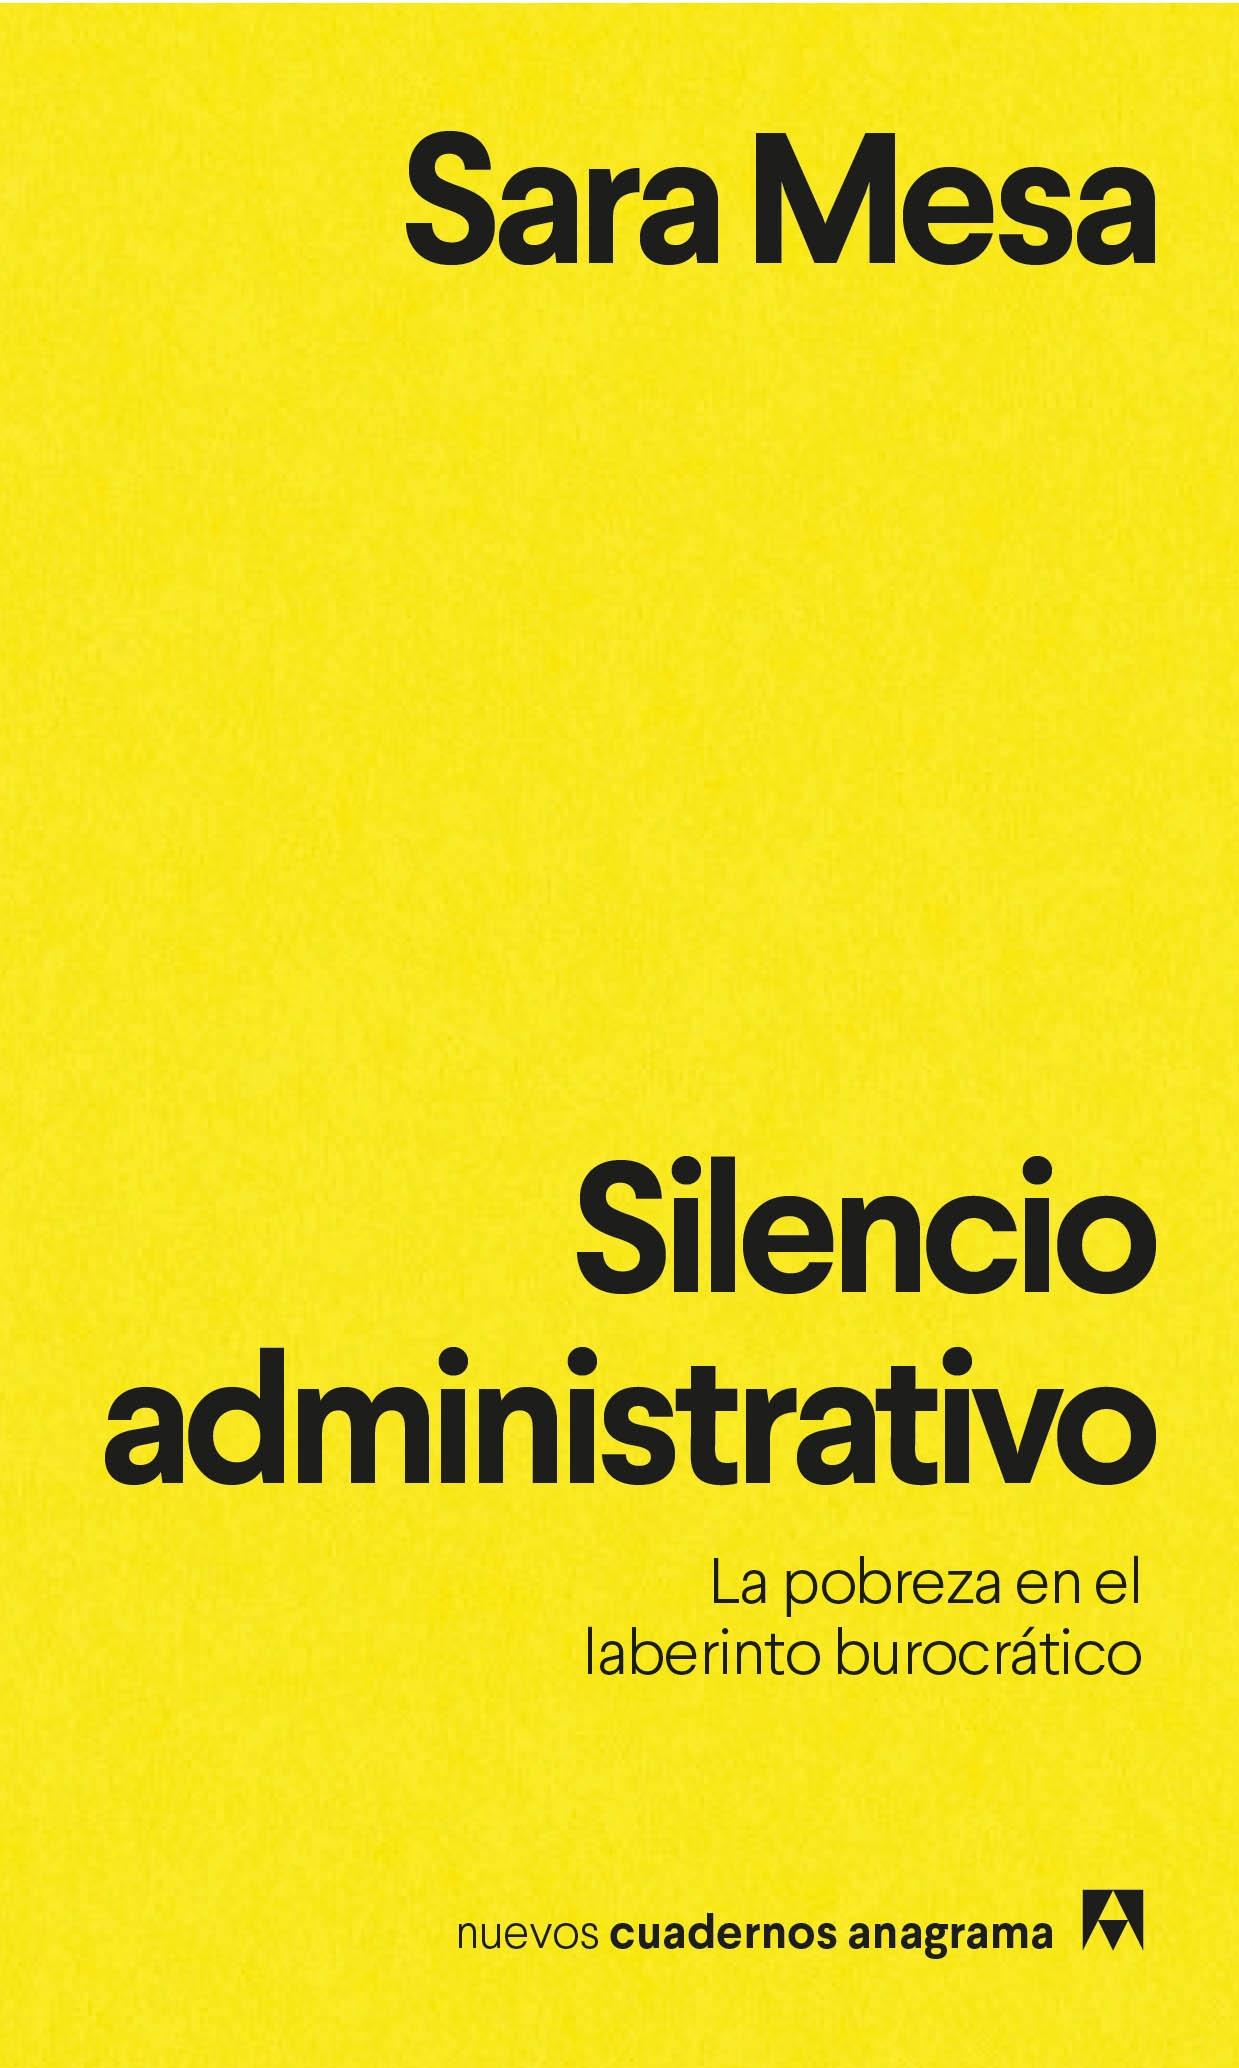 SILENCIO ADMINISTRATIVO "La pobreza en el laberinto burocrático"